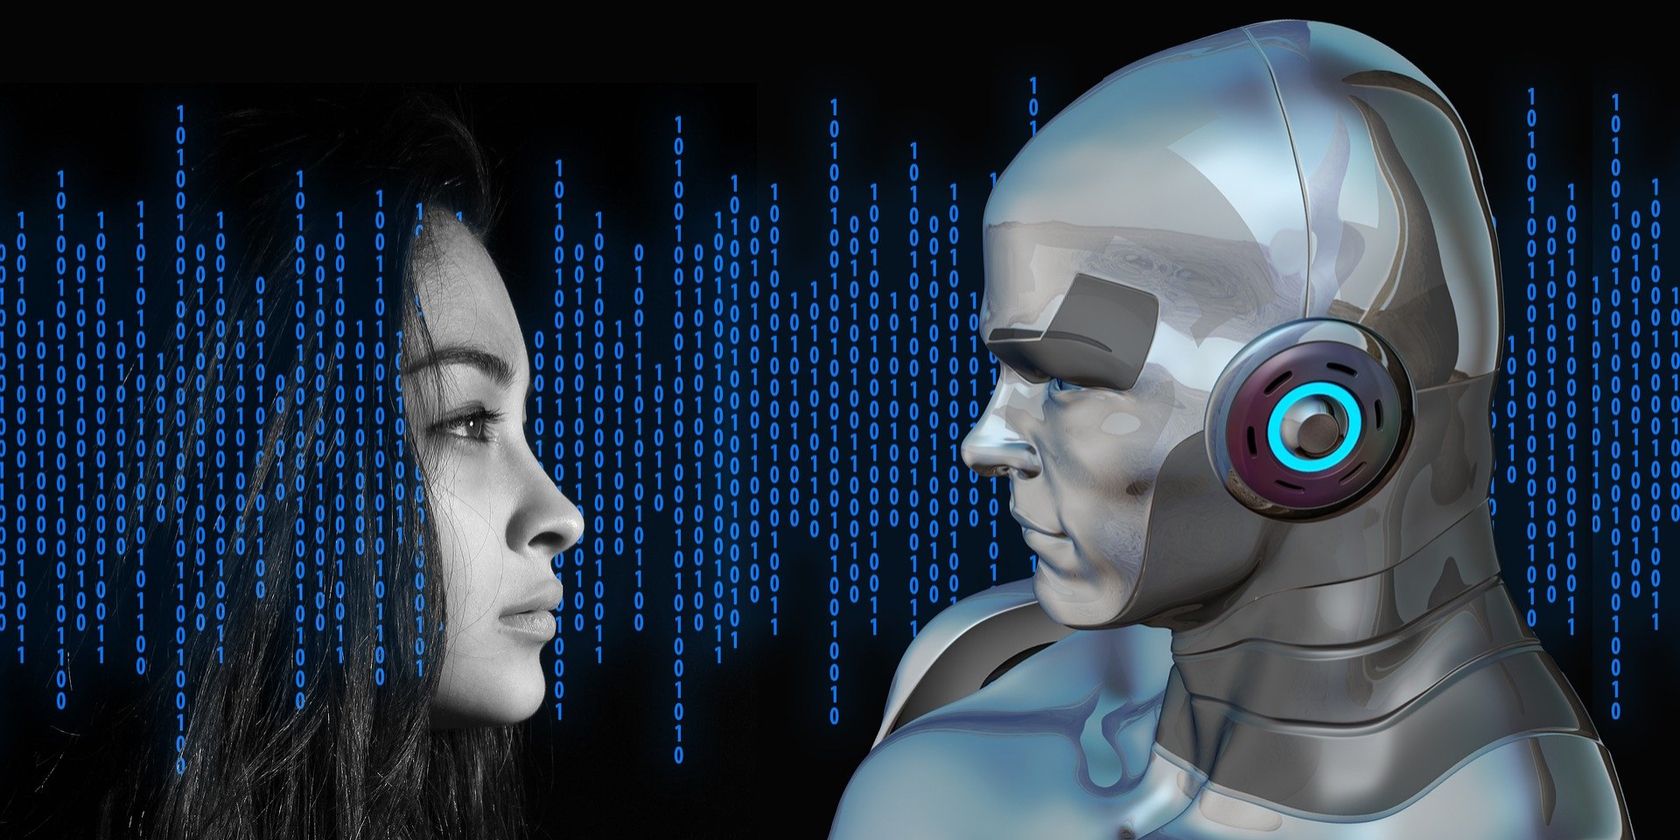 A human-looking robot facing a woman's face